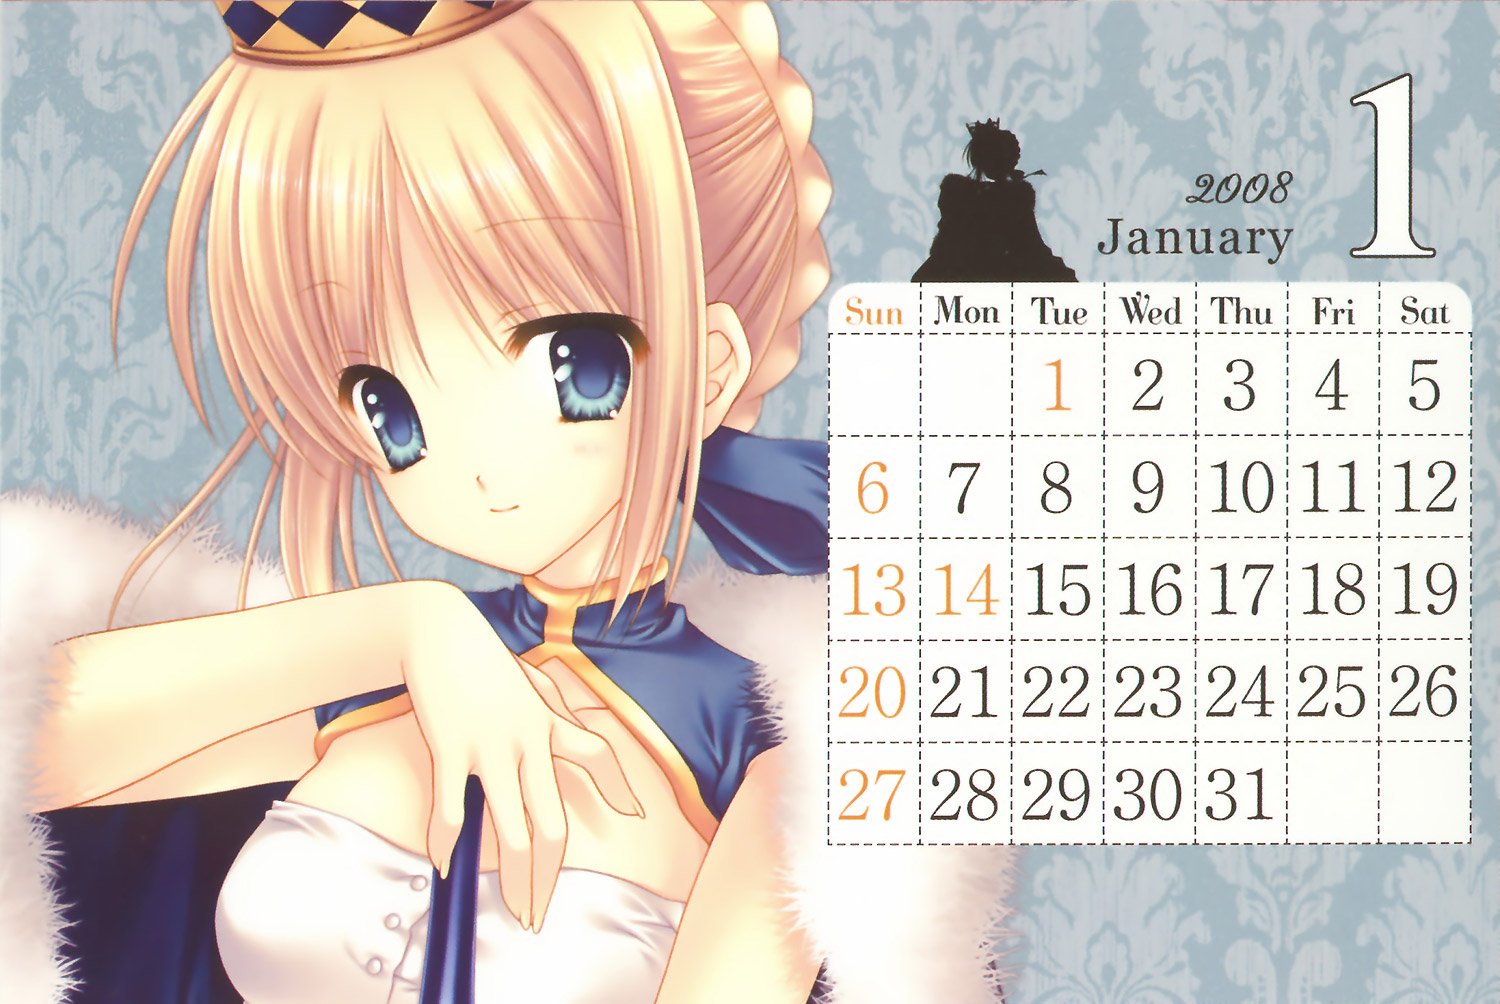 WNB MARK's 2008 Calendar image by Mako Tatekawa